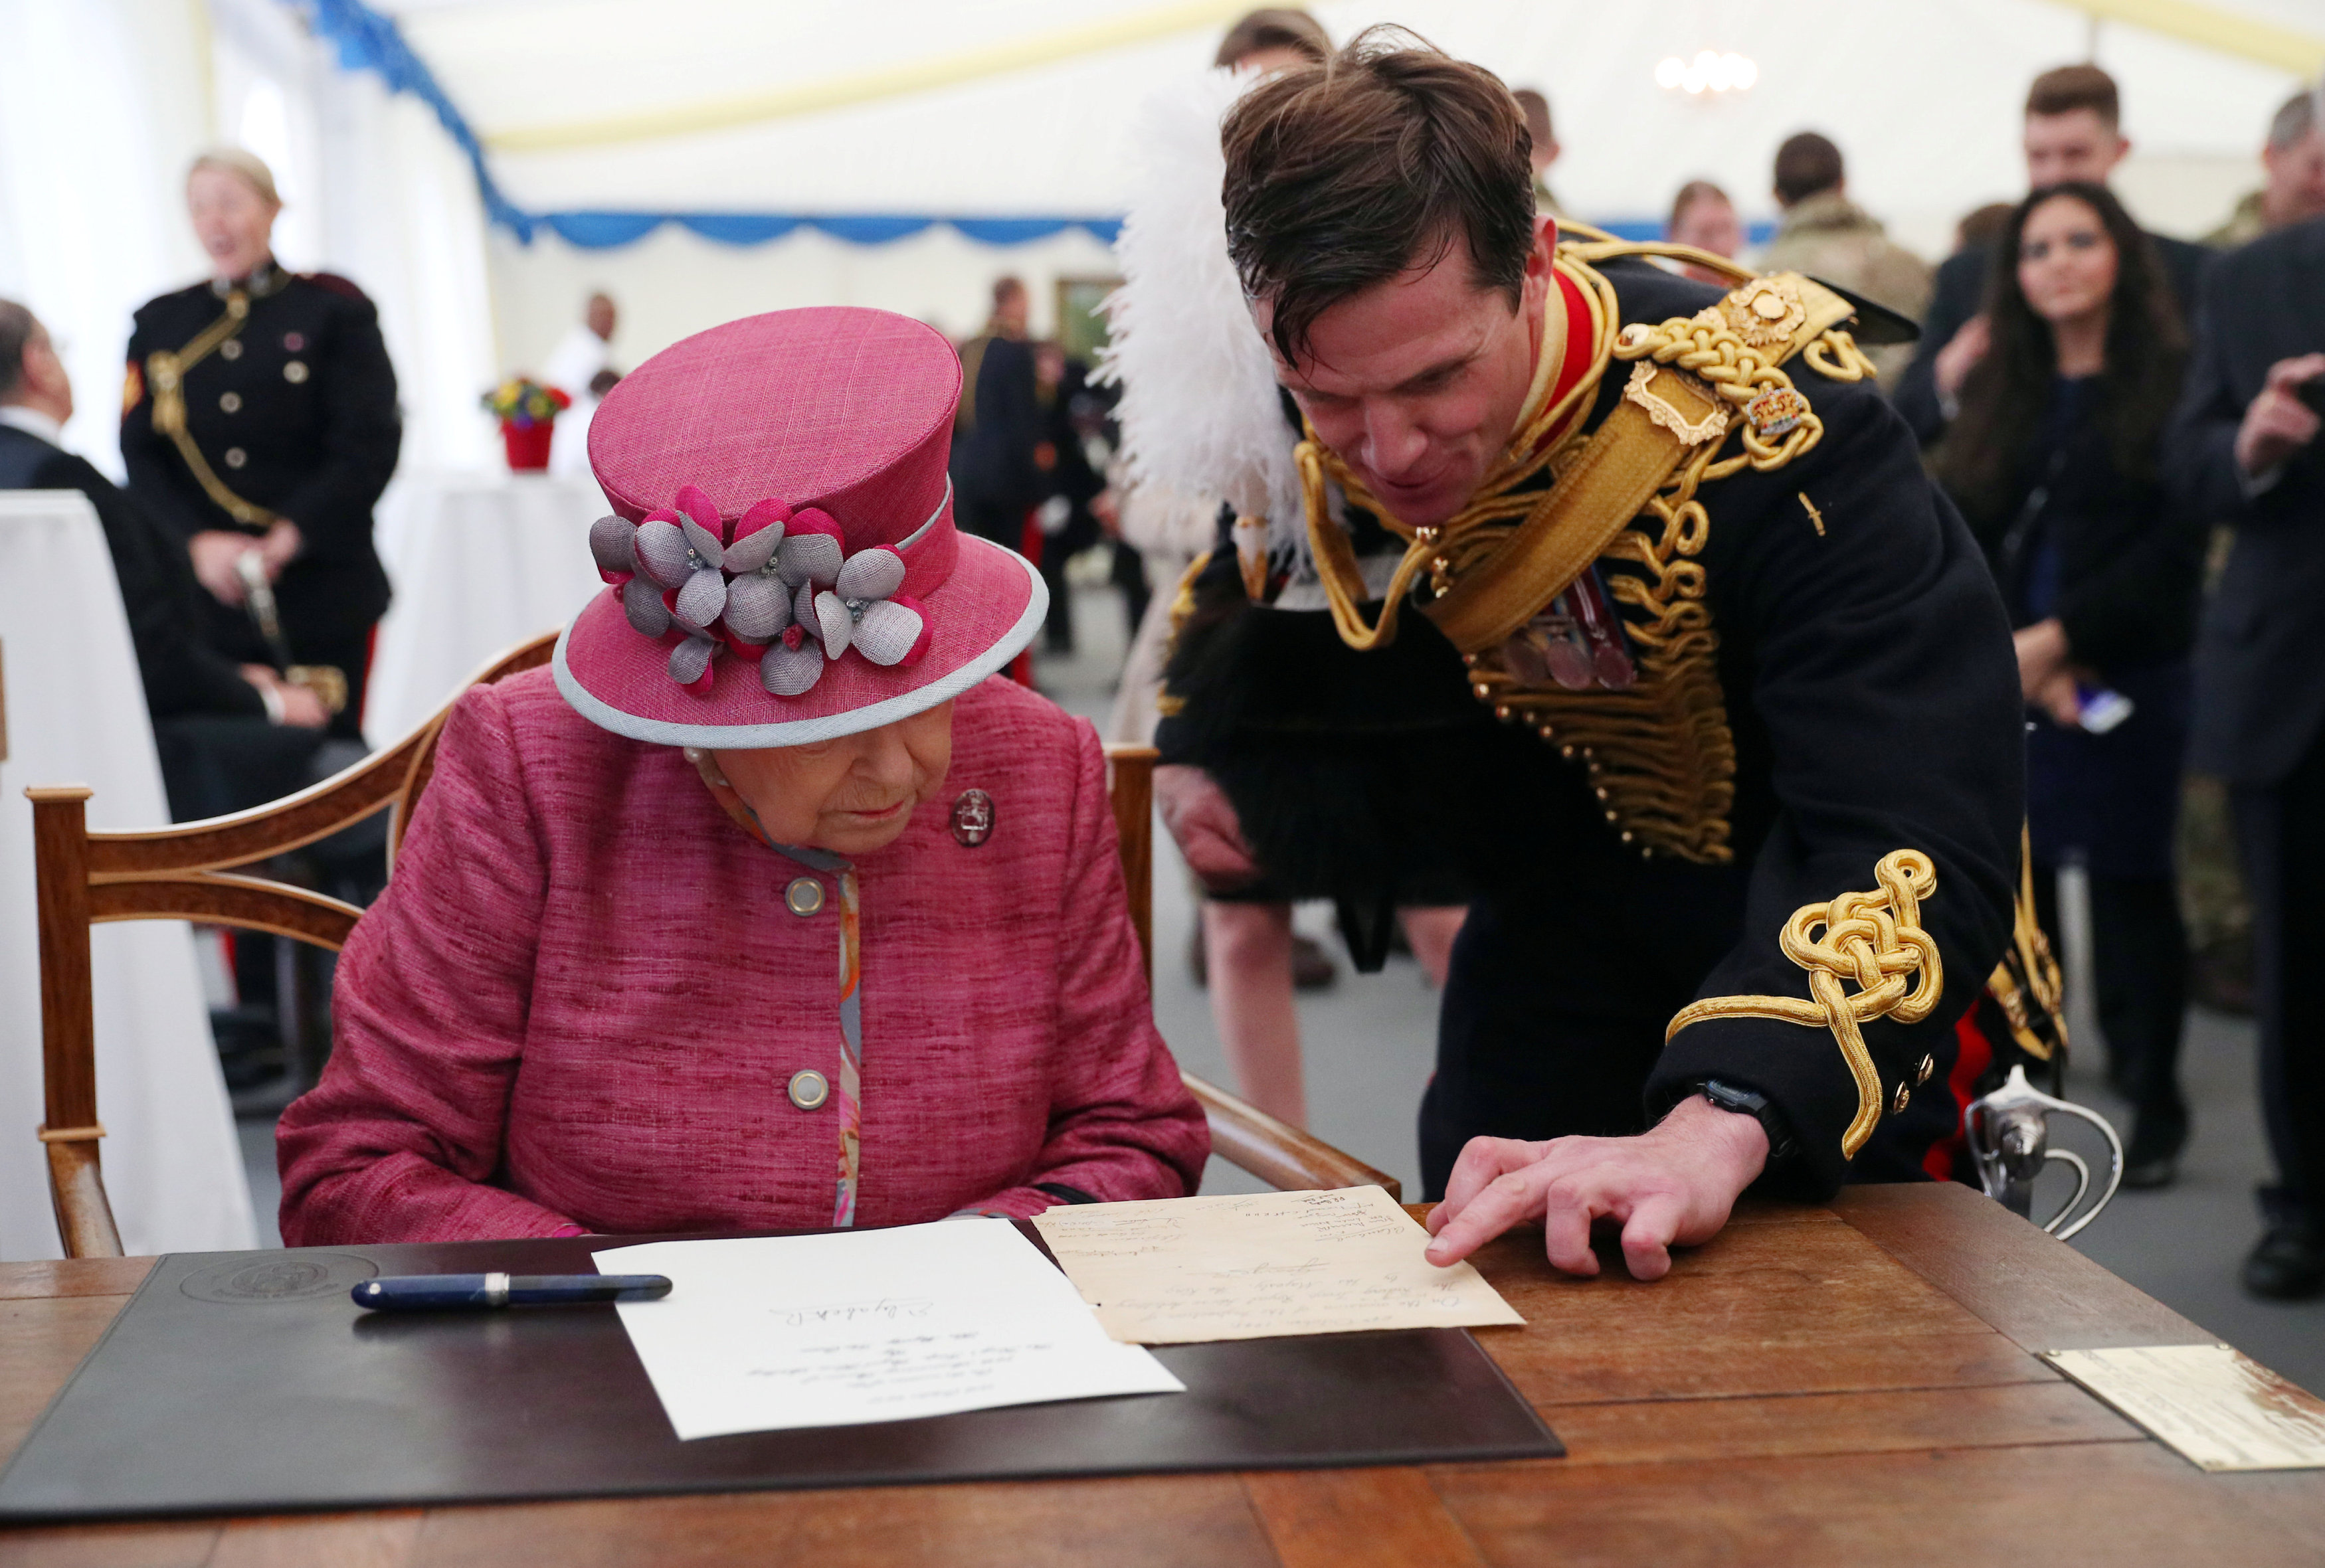 جندى بالمدفعية الملكية يقرأ رسالة للملكة إليزابيث